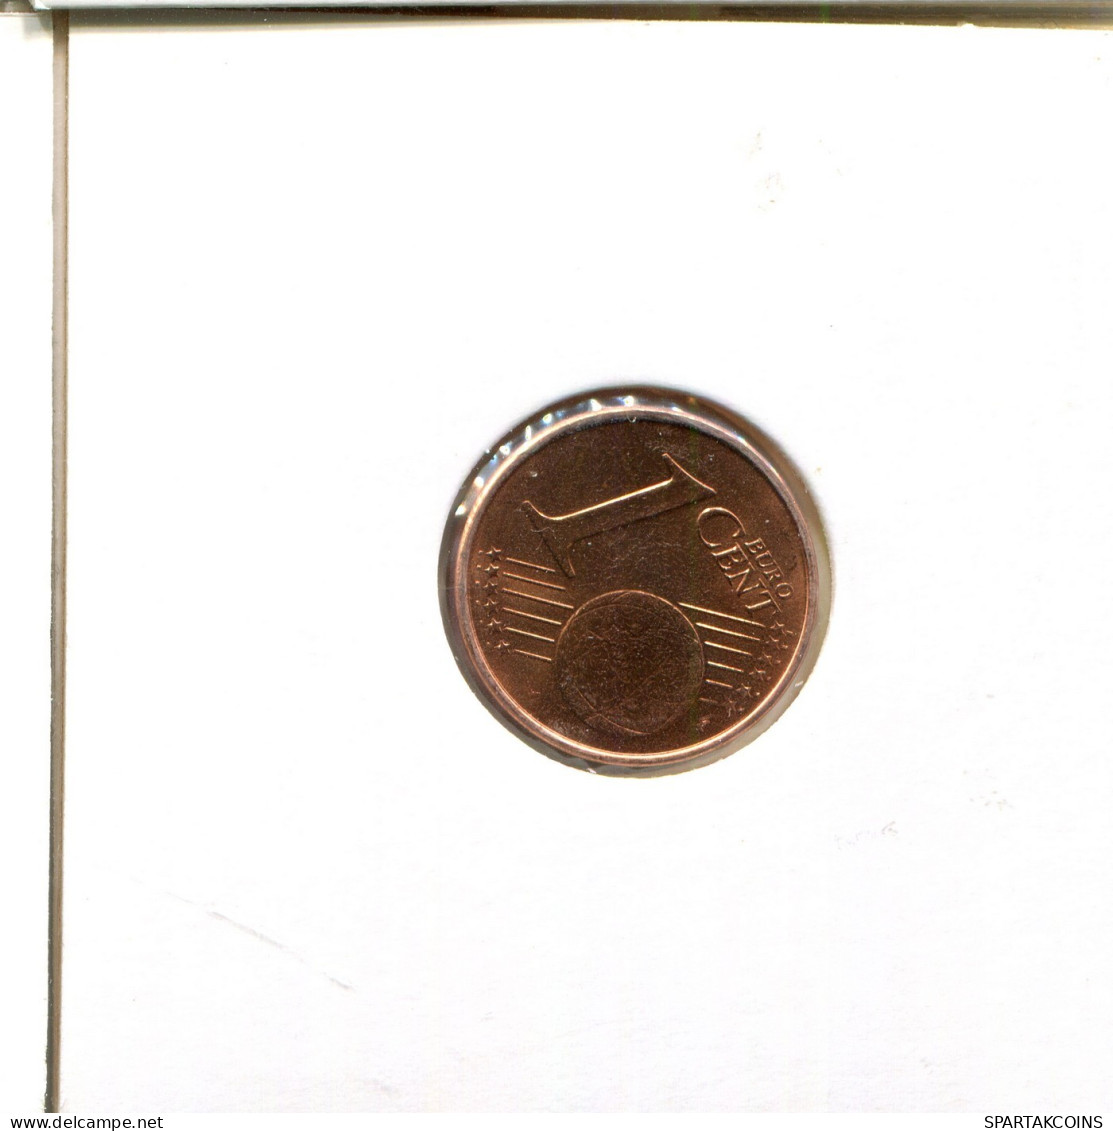 1 EURO CENT 2006 GRIECHENLAND GREECE Münze #EU165.D.A - Greece